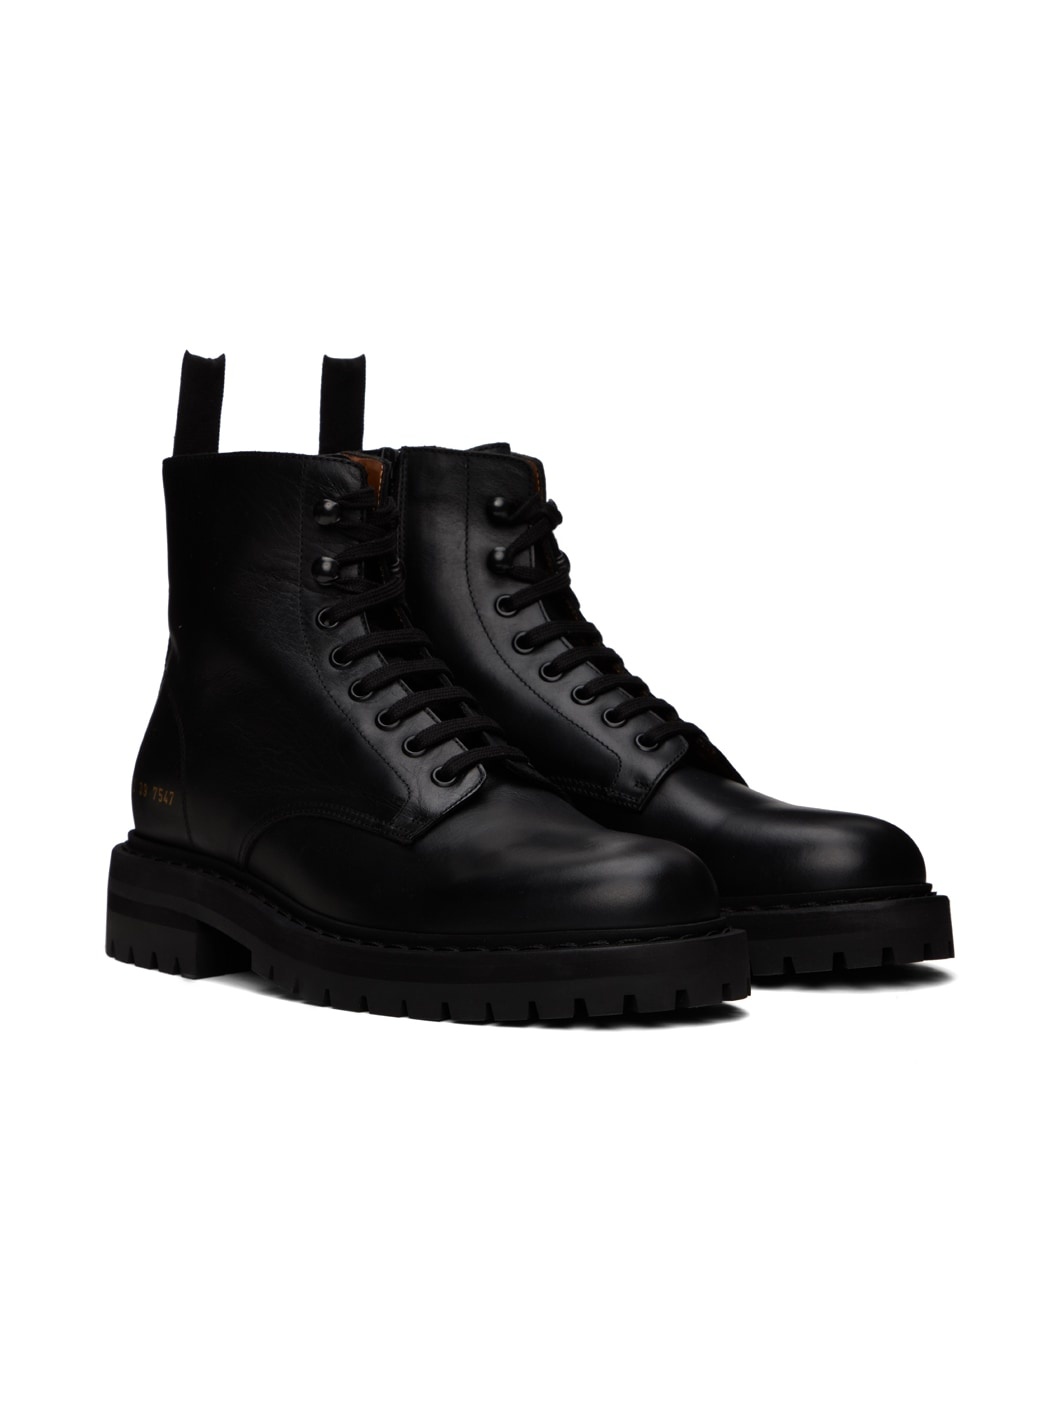 Black Combat Boots - 4